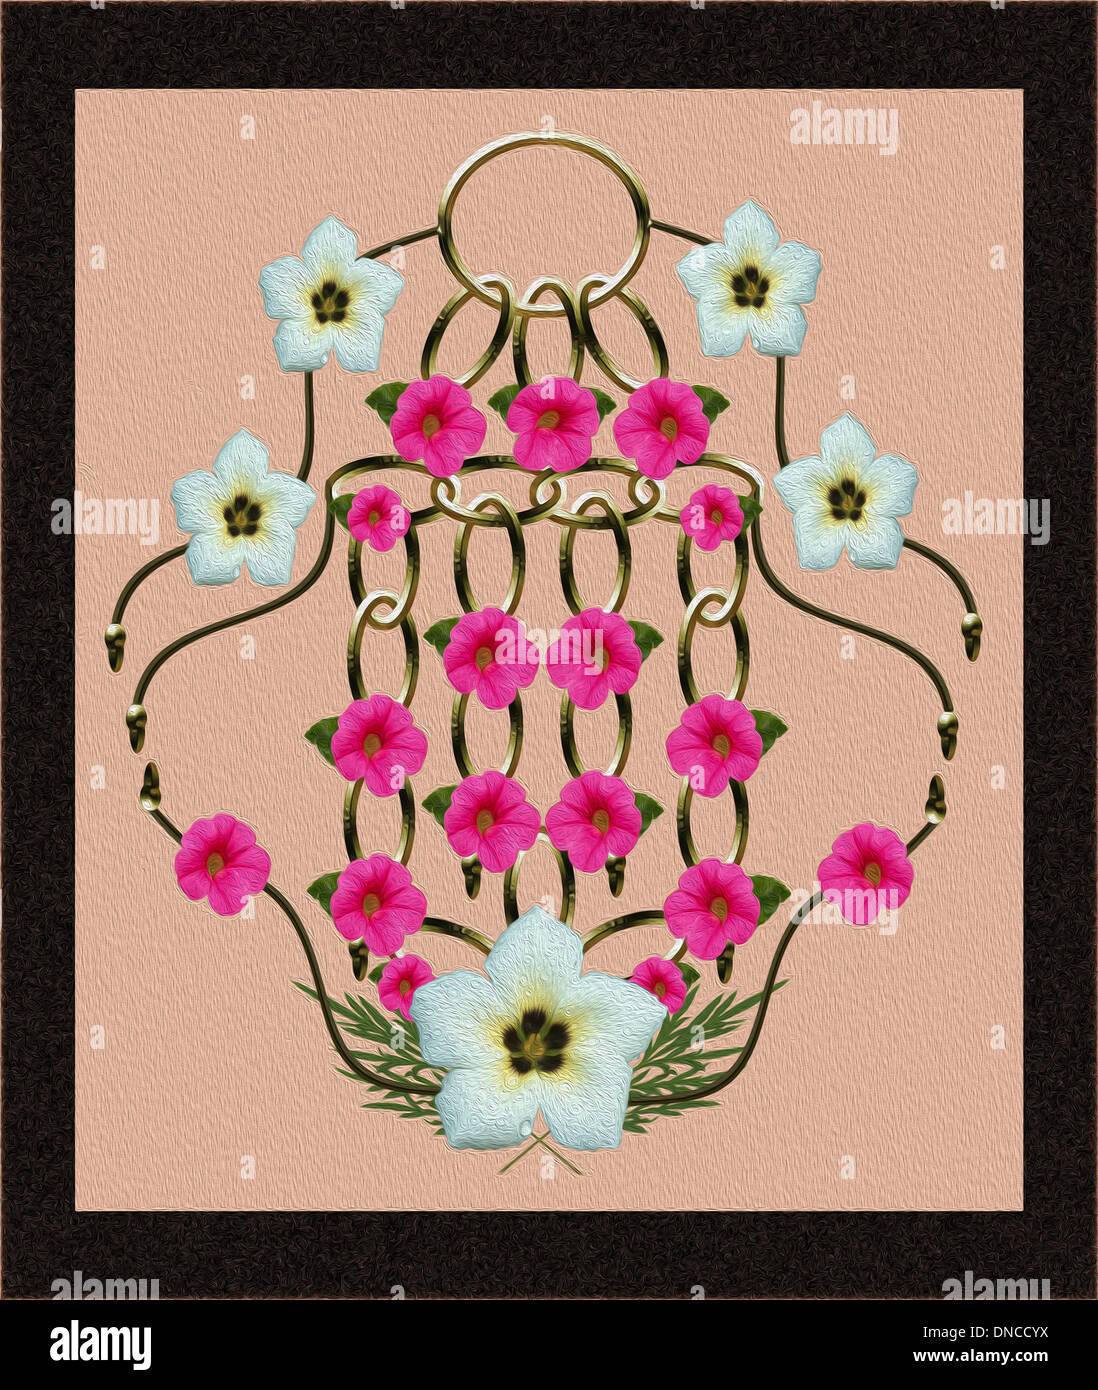 Unique digital arte floreale con rosa chiaro / rosso nelle petunie e bianco fiori di turnera legati da ornati in golden catena metallica Foto Stock